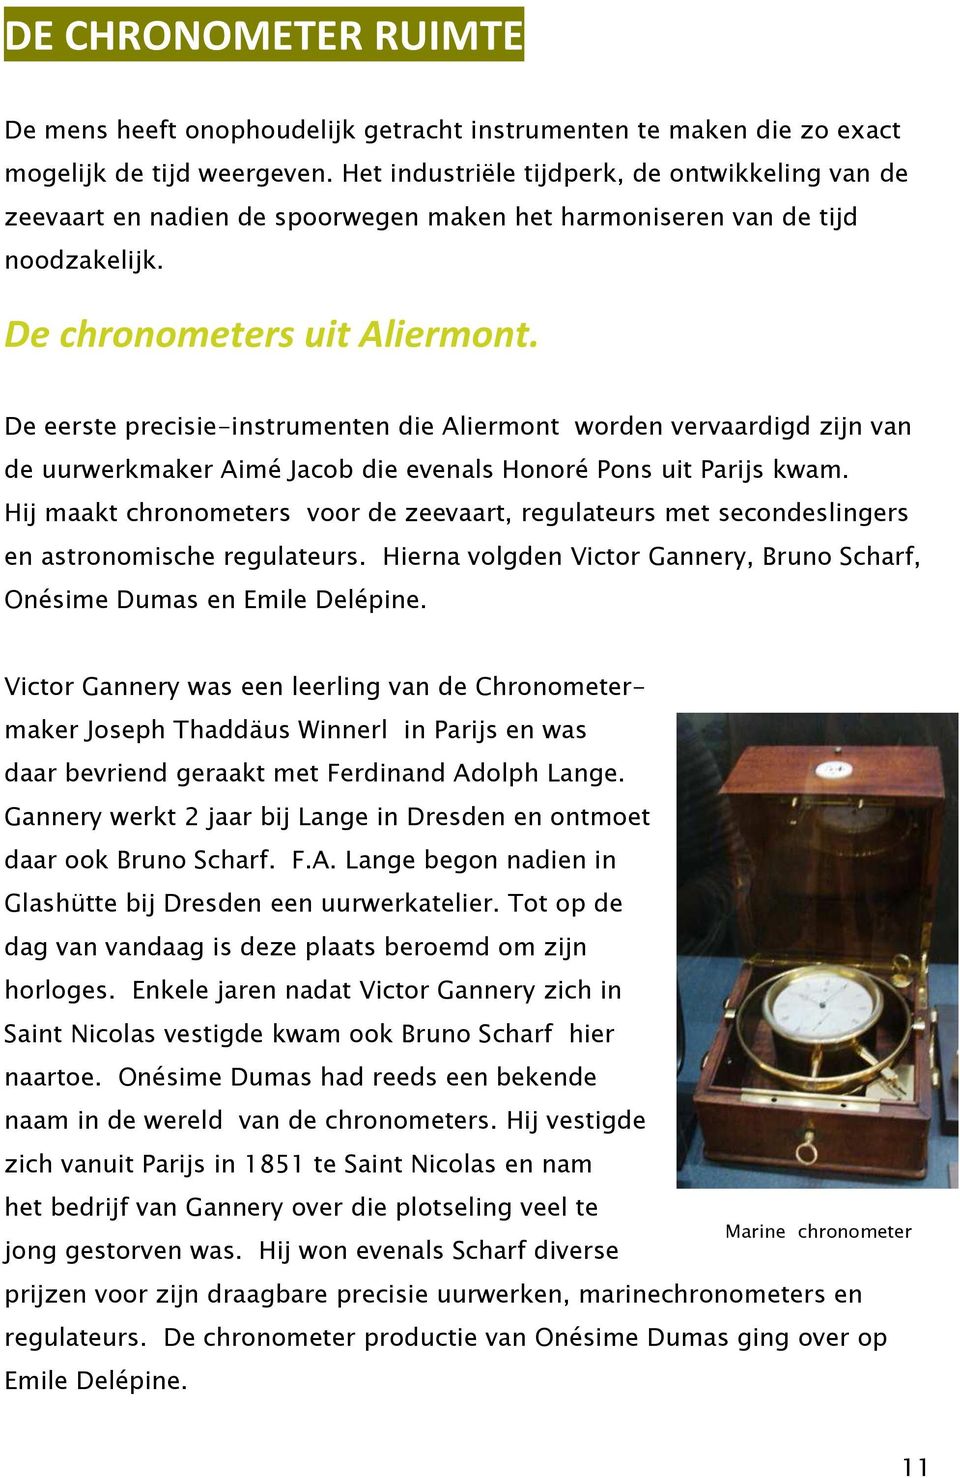 De eerste precisie-instrumenten die Aliermont worden vervaardigd zijn van de uurwerkmaker Aimé Jacob die evenals Honoré Pons uit Parijs kwam.